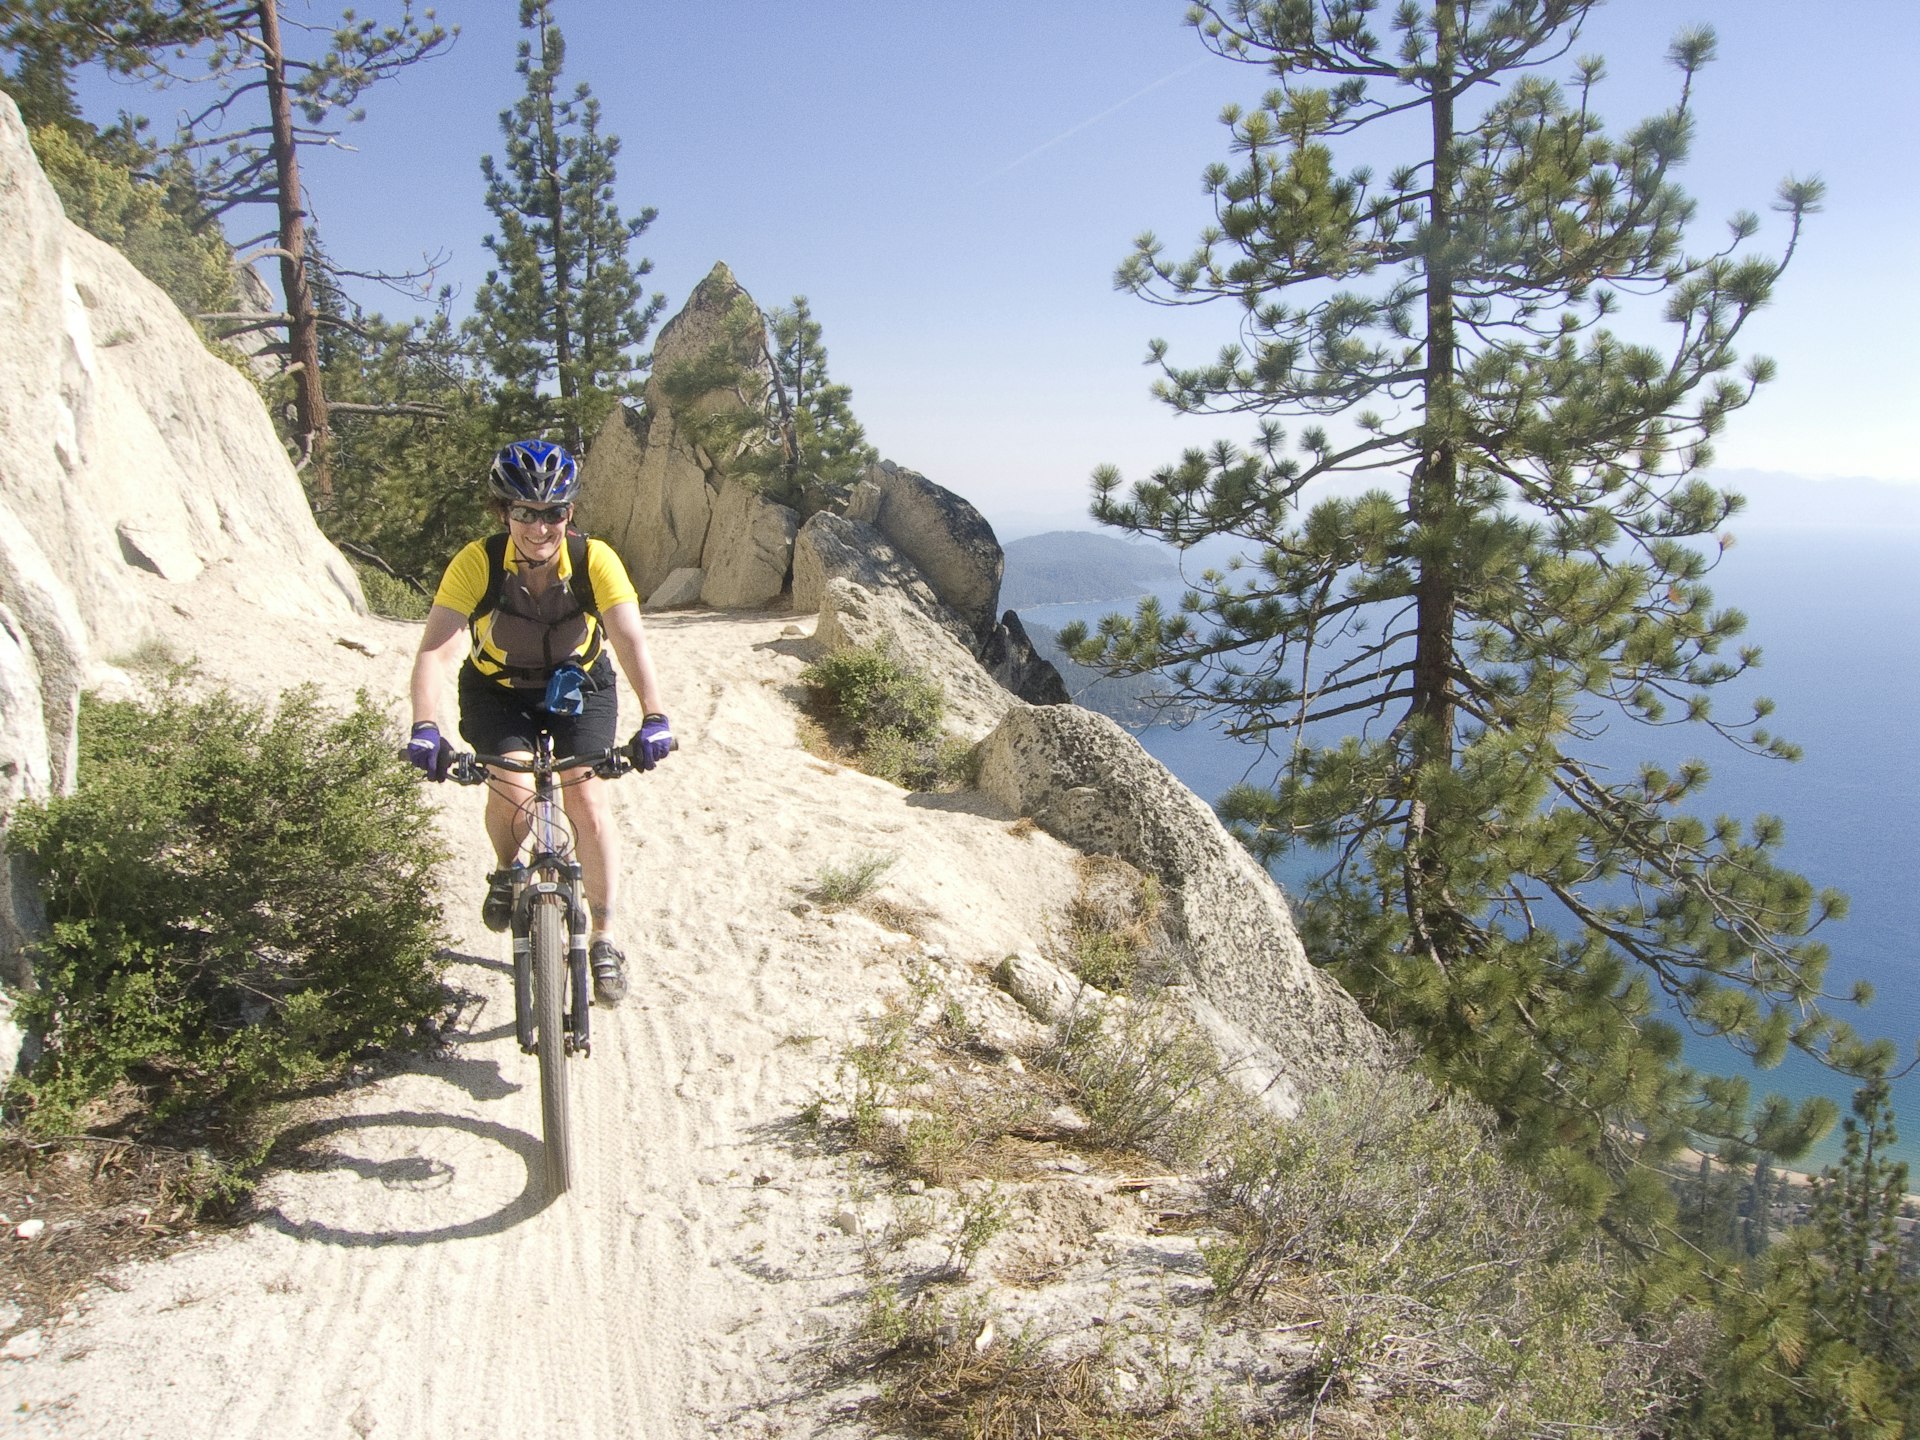 Uma mulher em uma mountain bike sorri enquanto desce uma trilha íngreme e arenosa